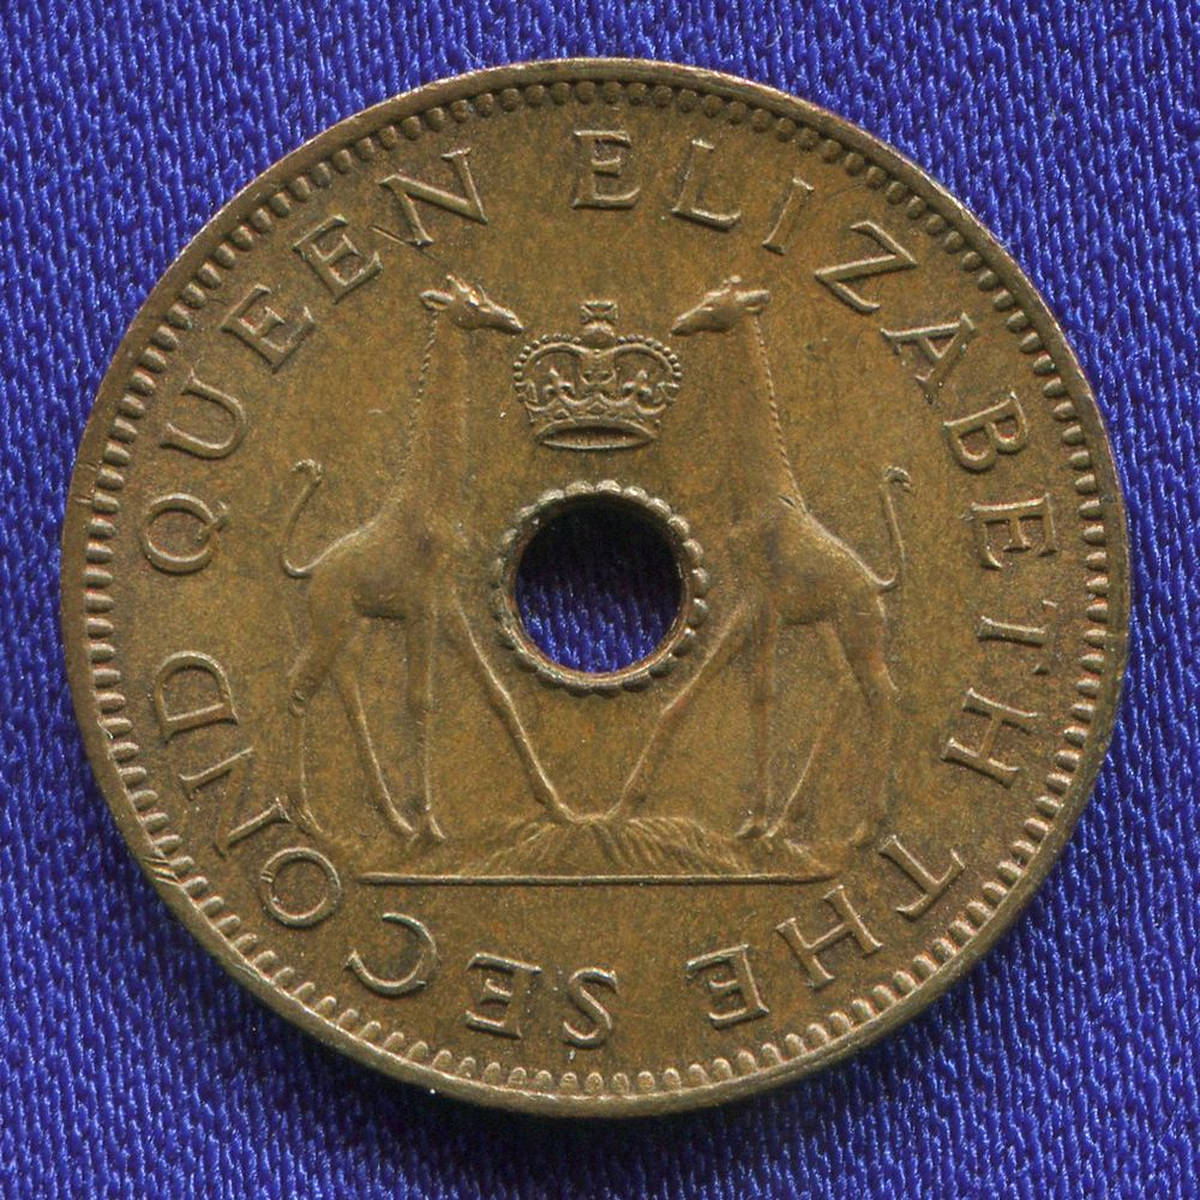 Родезия и Ньясаленд 1/2 пенни 1964 UNC 